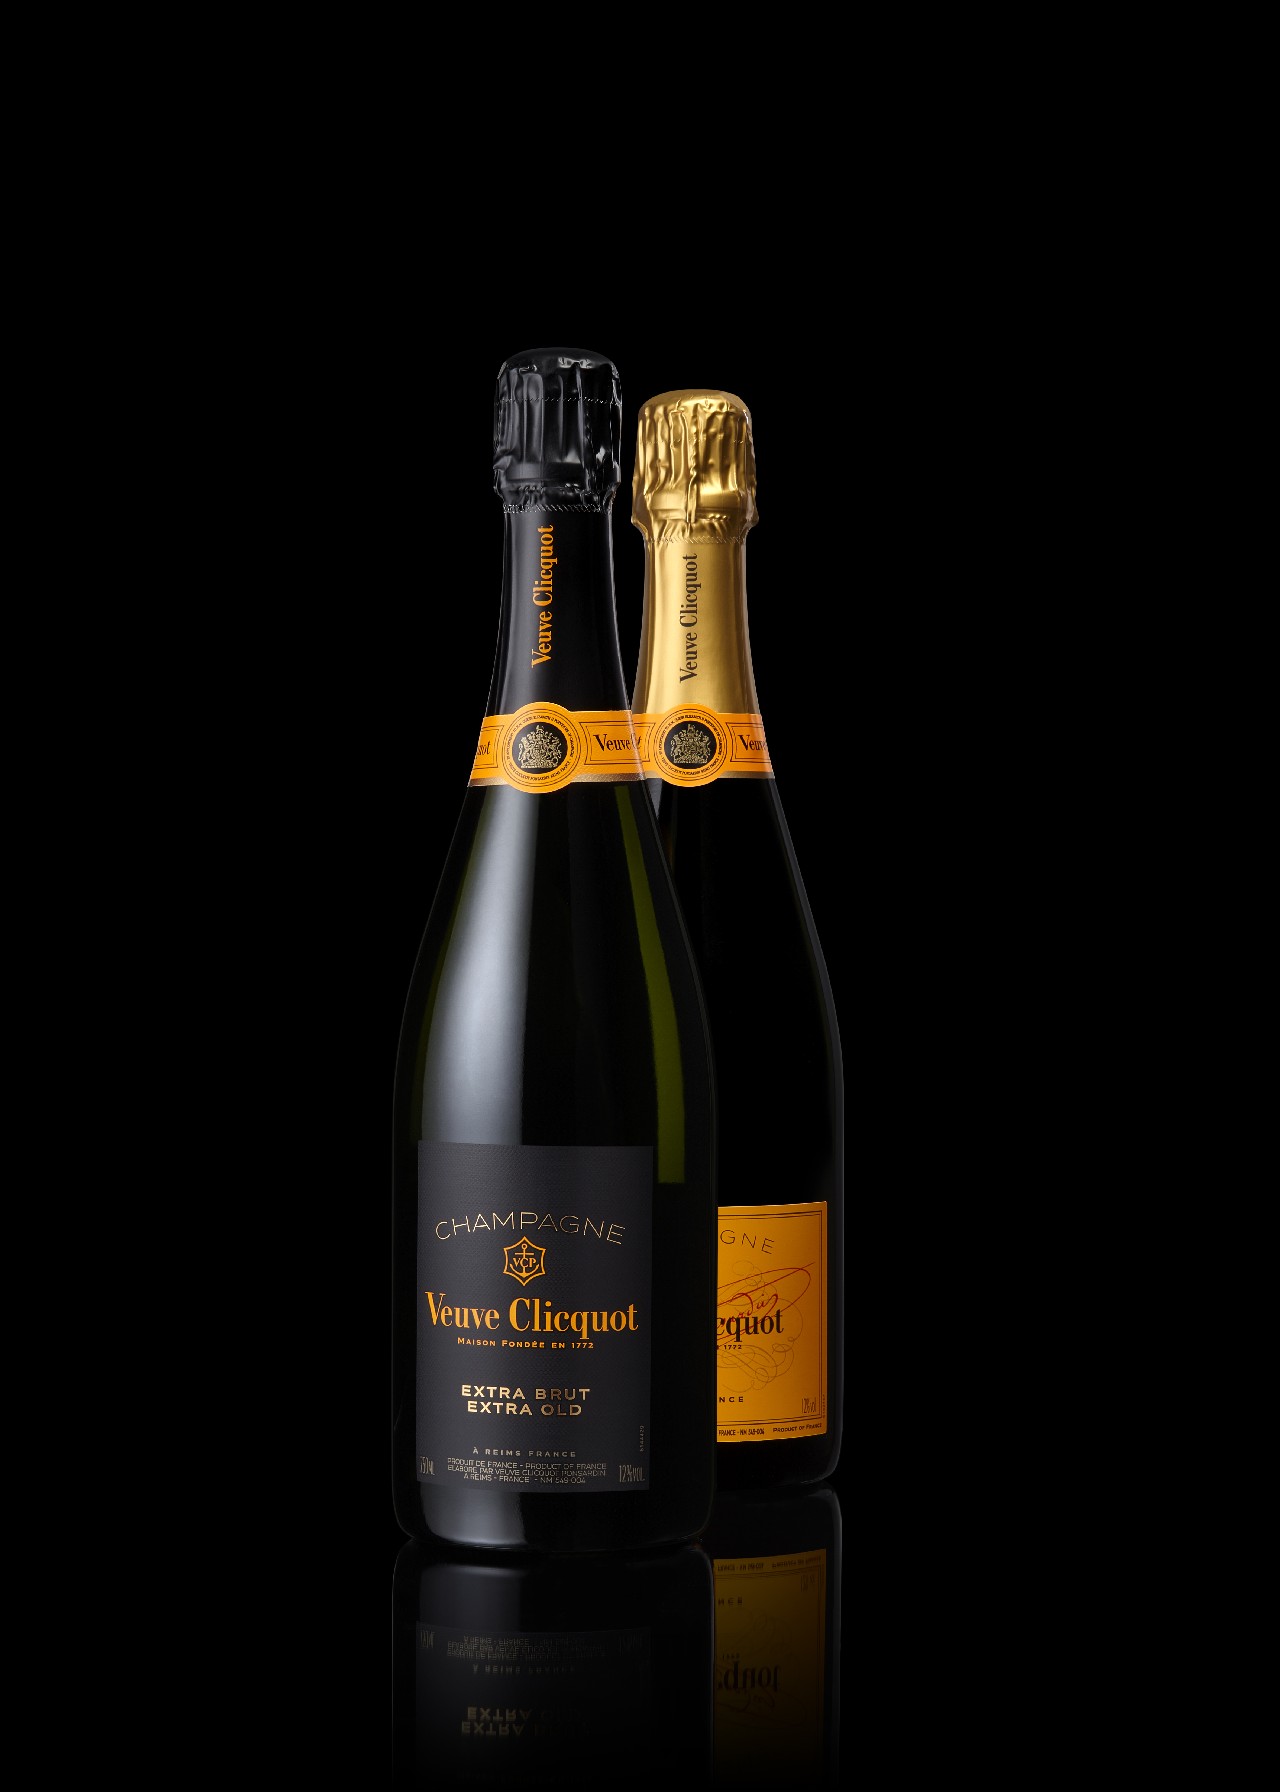 Veuve Clicquot Champagne: Extra Brut Extra Old, la Cuvée assemblata esclusivamente con i preziosi vini di riserva